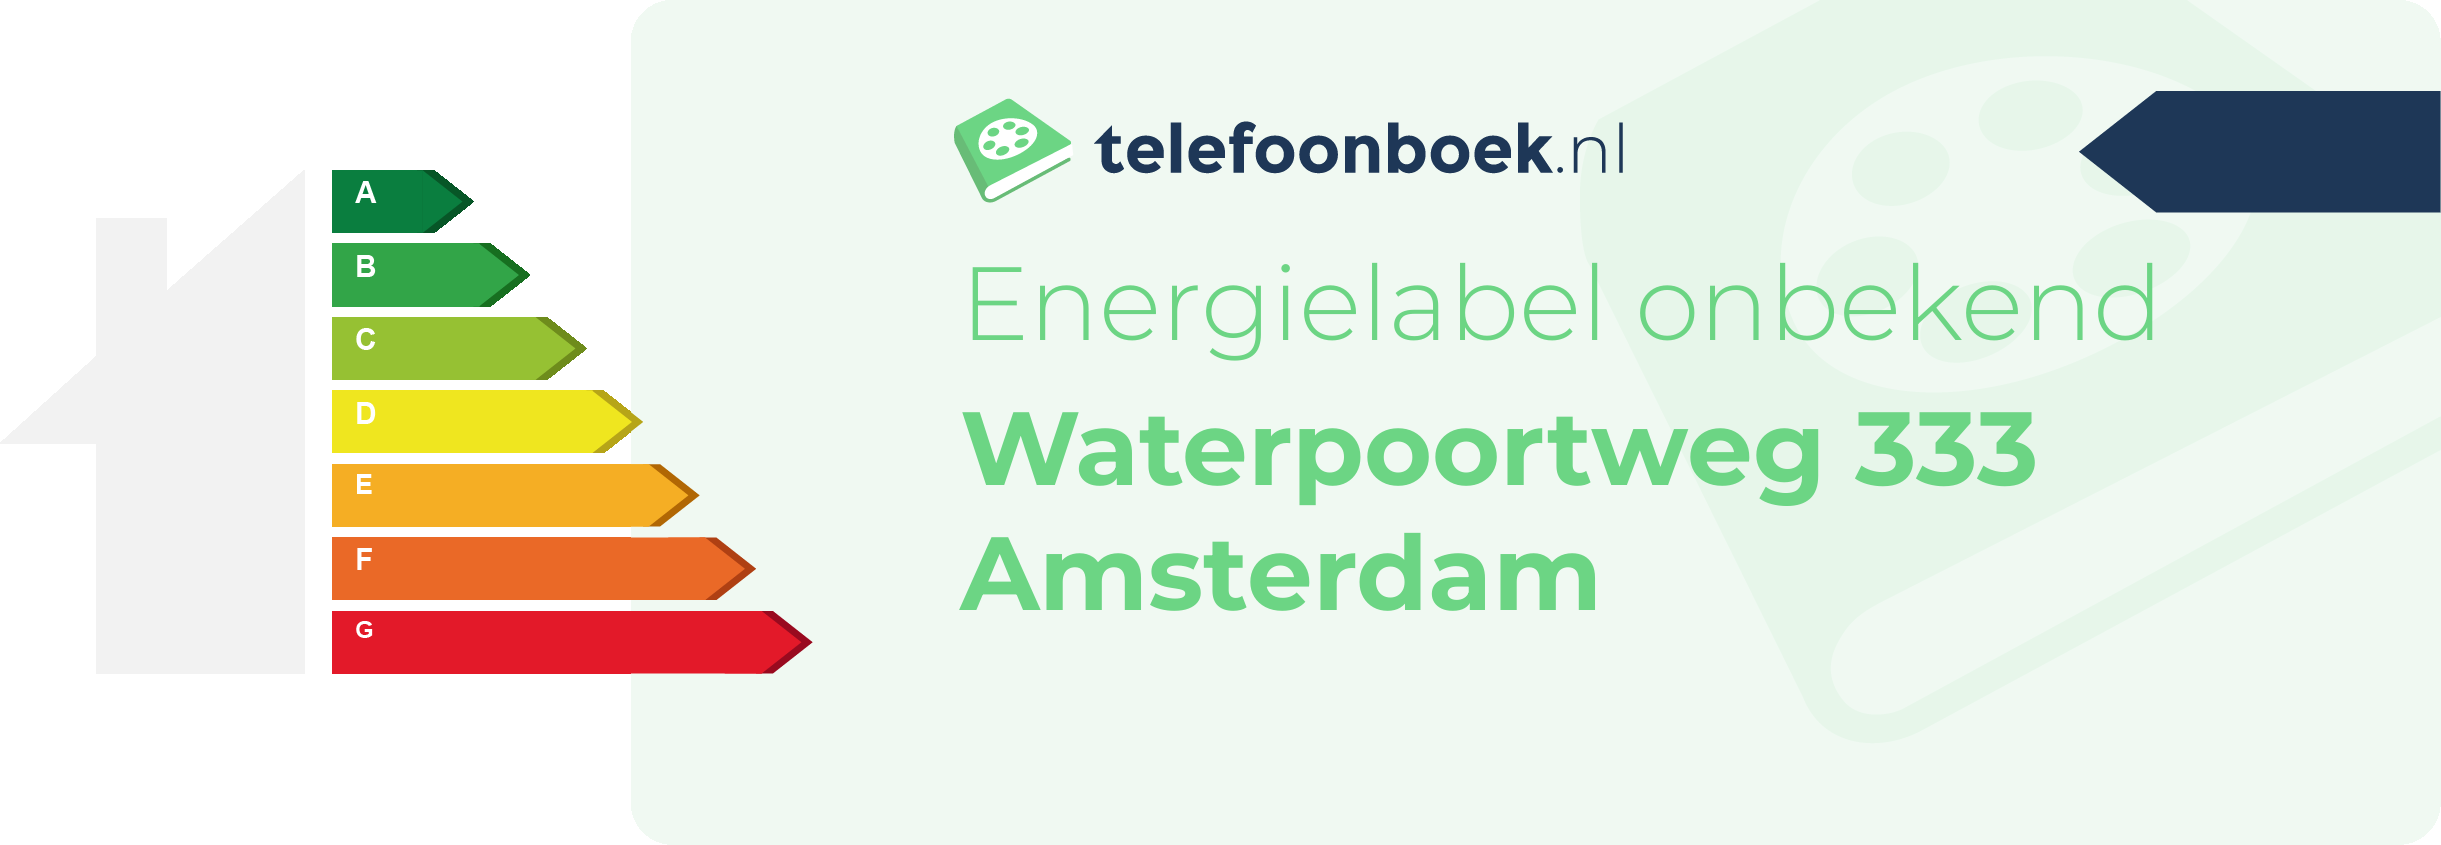 Energielabel Waterpoortweg 333 Amsterdam